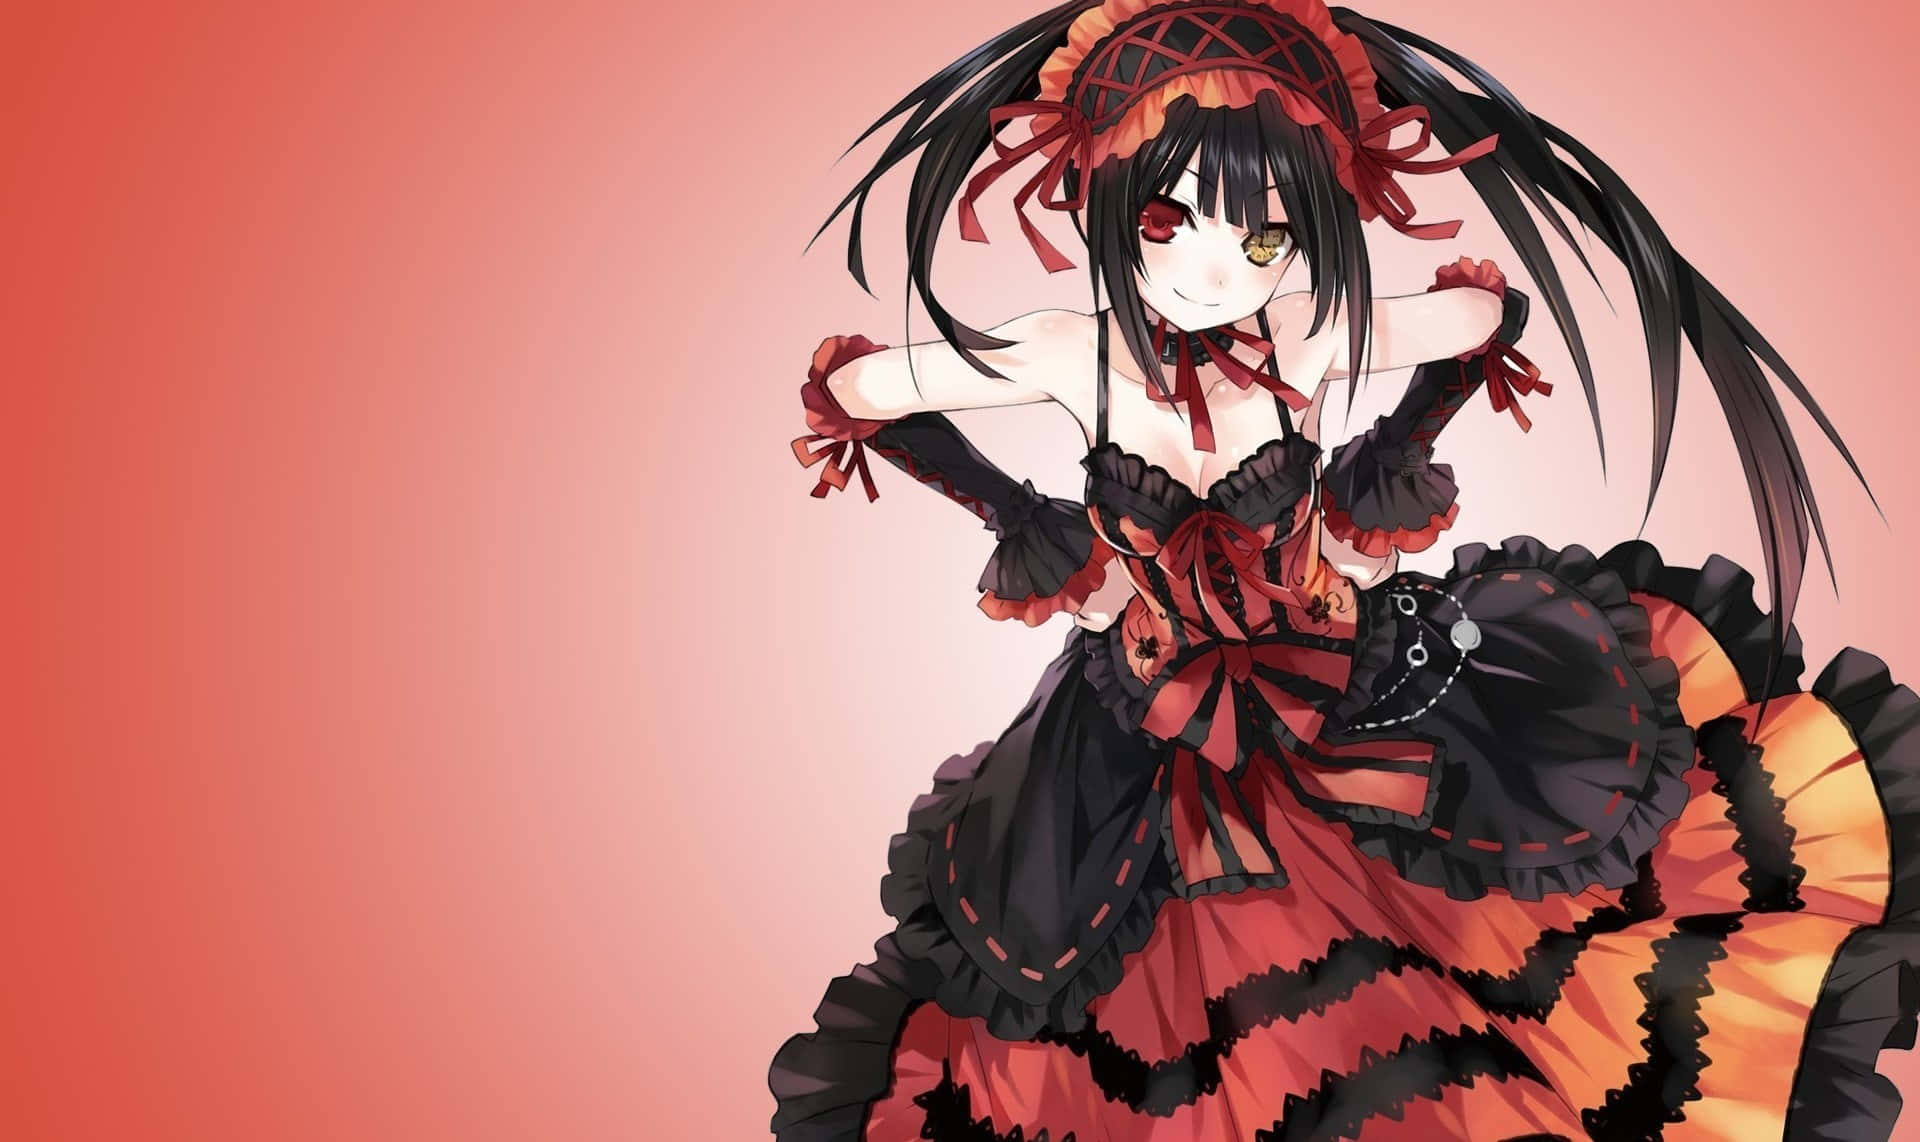 Gothic Anime Girlin Red Black Dress Wallpaper